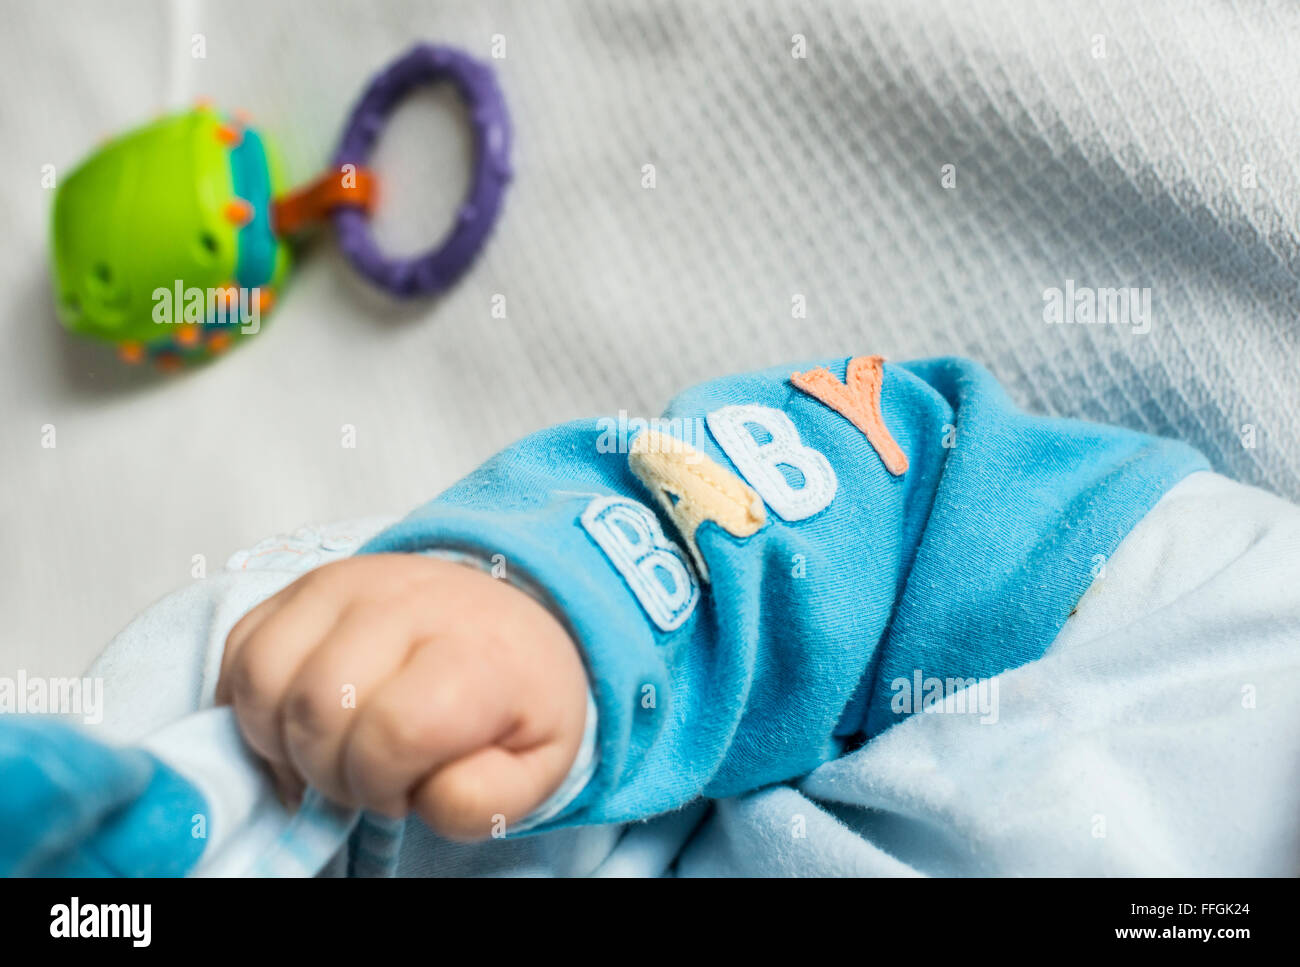 La main de bébé Bébé texte ADN. Banque D'Images